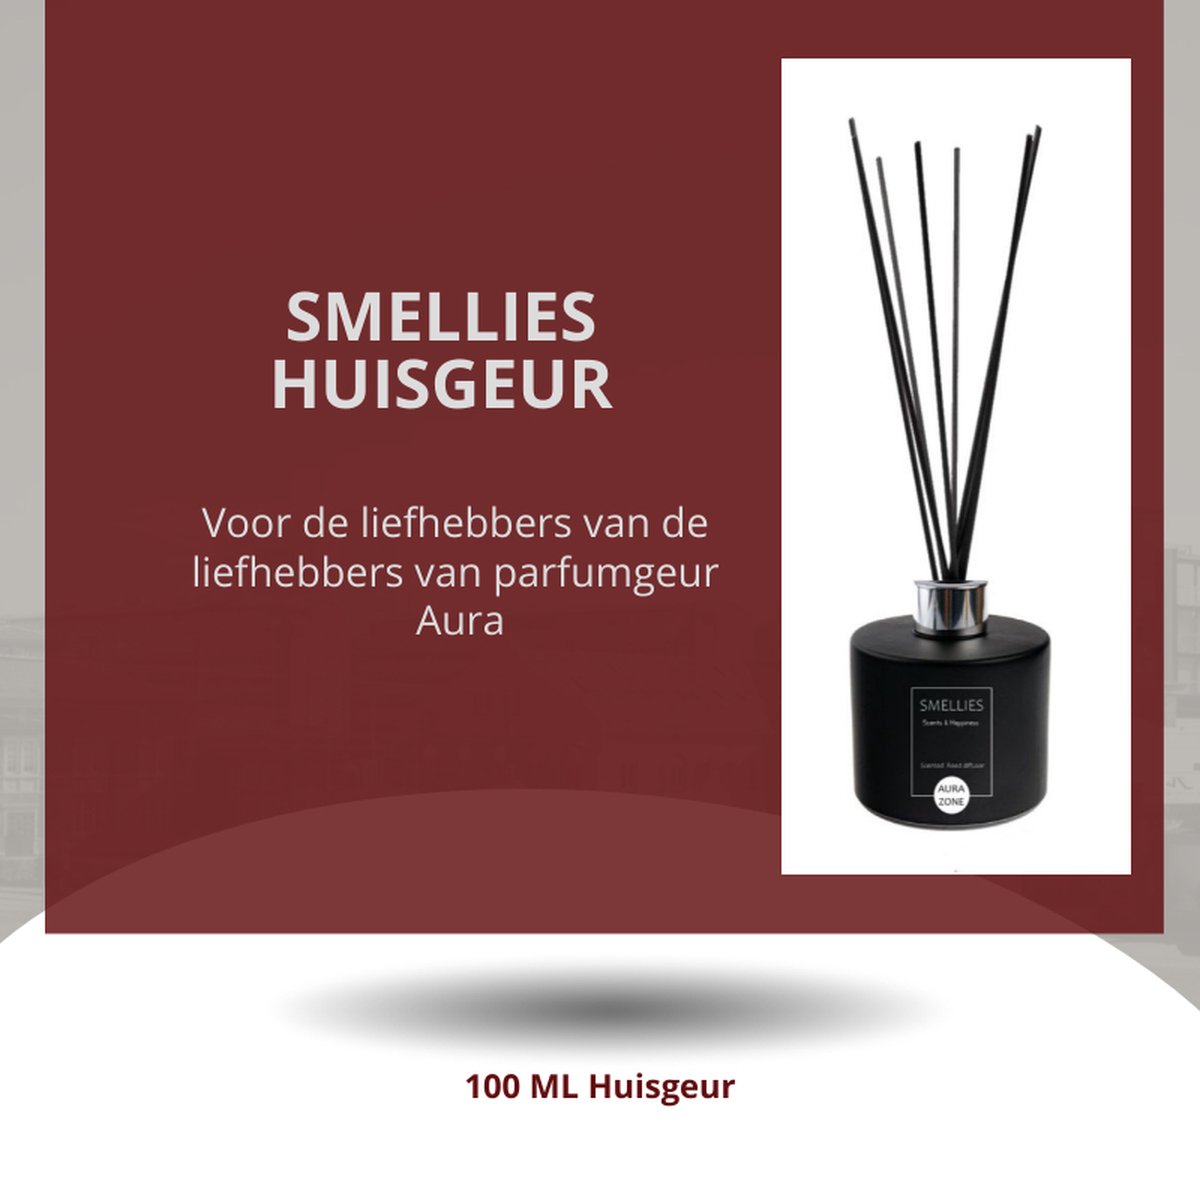 SMELLIES - Parfum - Geurstokjes - Huisgeur - Huisparfum - AURA ZONE - 100ml